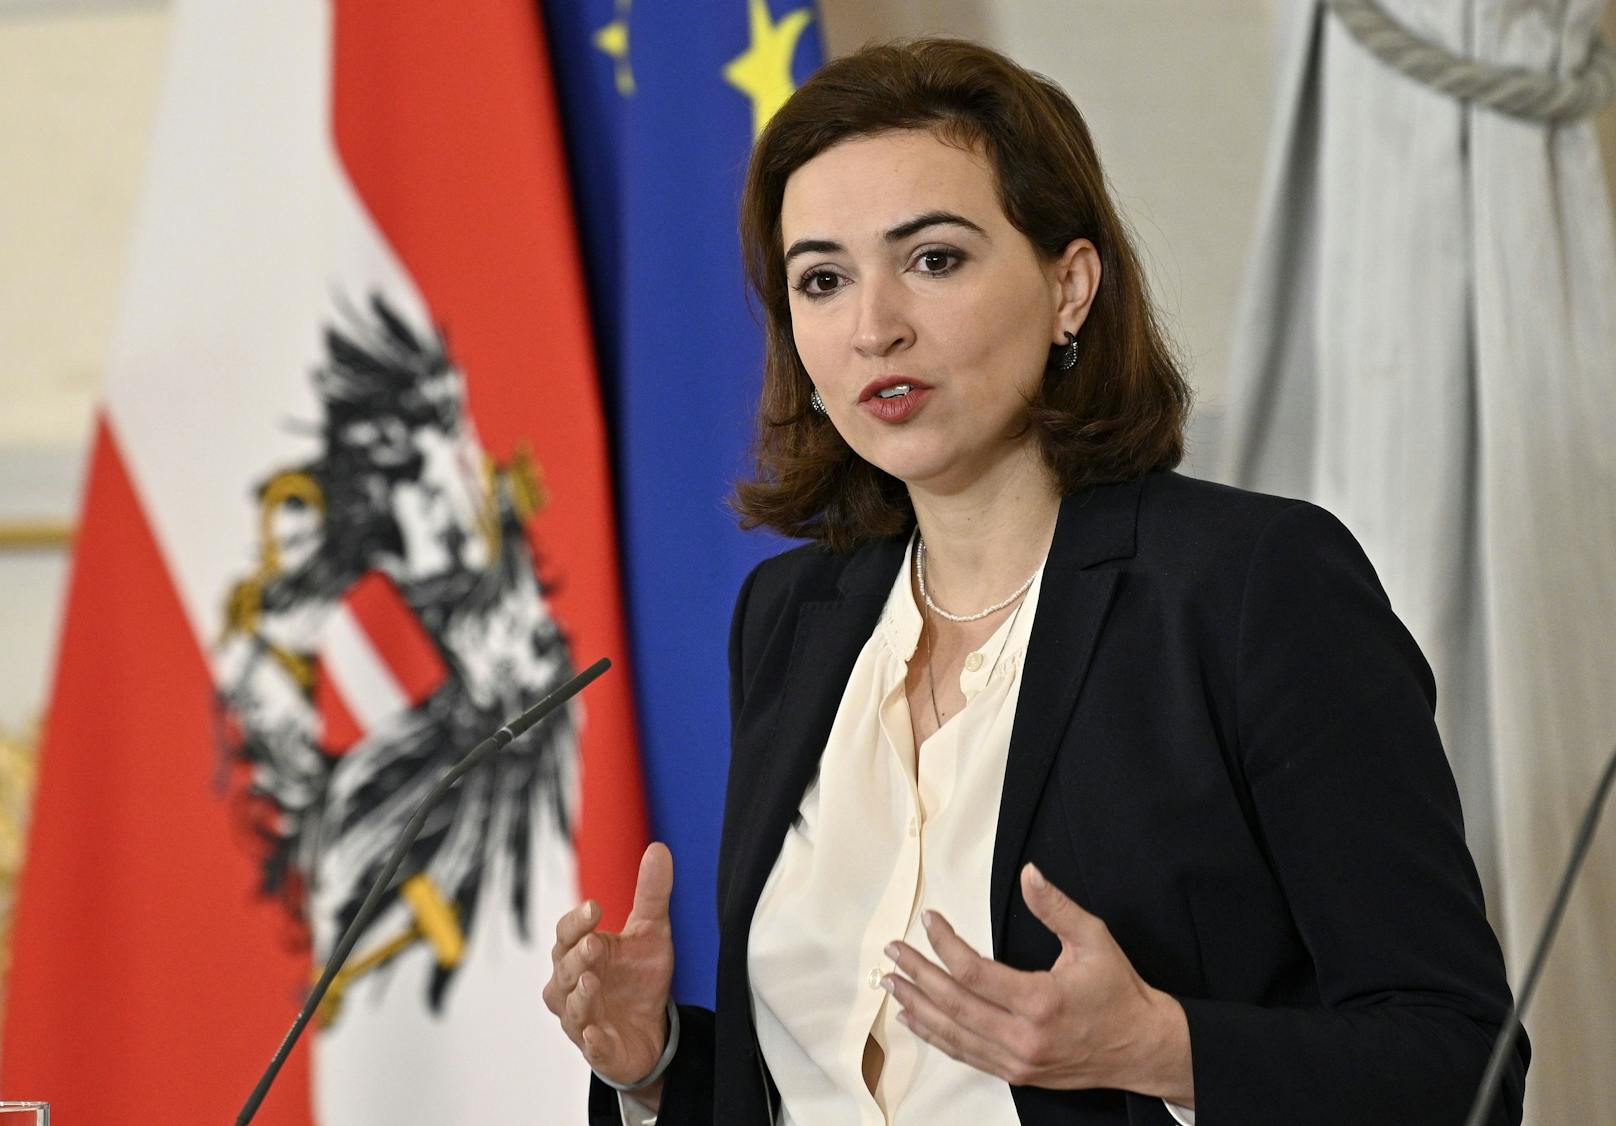 Justizministerin Alma Zadic (Grüne) einigte sich mit EU-Amtskollegen auf eine Erklärung.